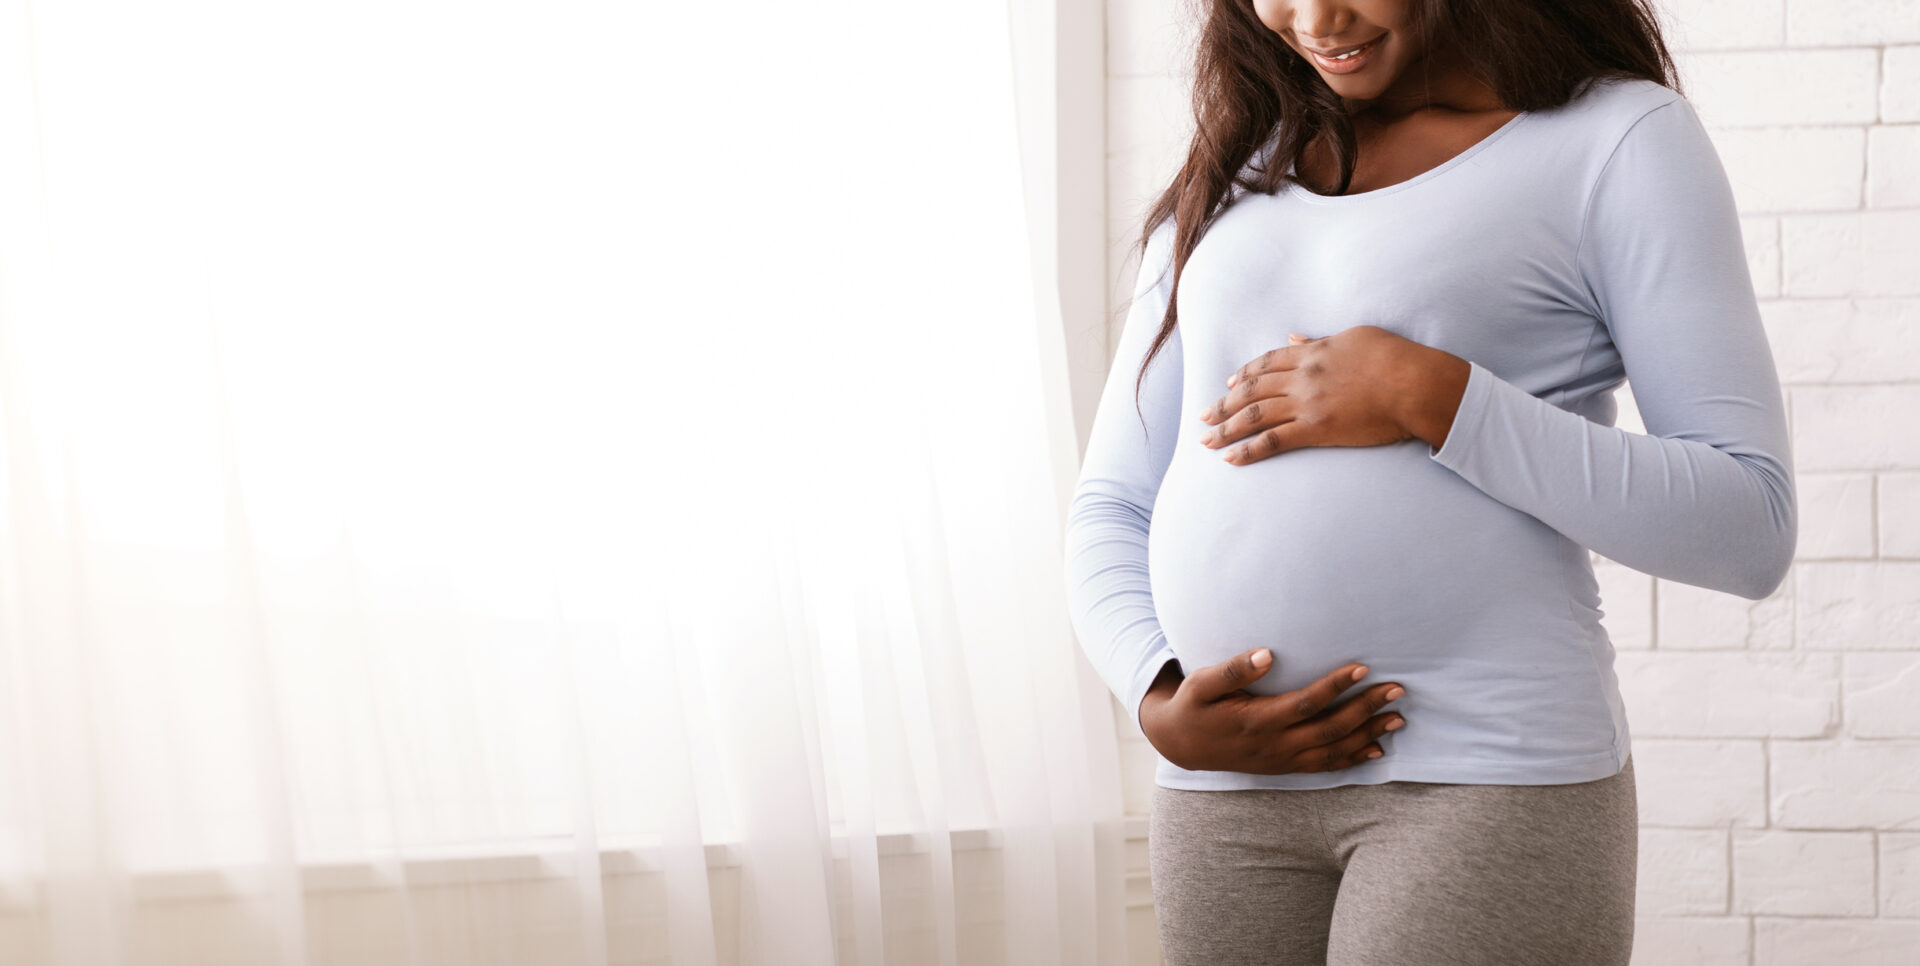 La talidomida está clasificada como teratógeno y causa defectos de nacimiento cuando la toman mujeres embarazadas.